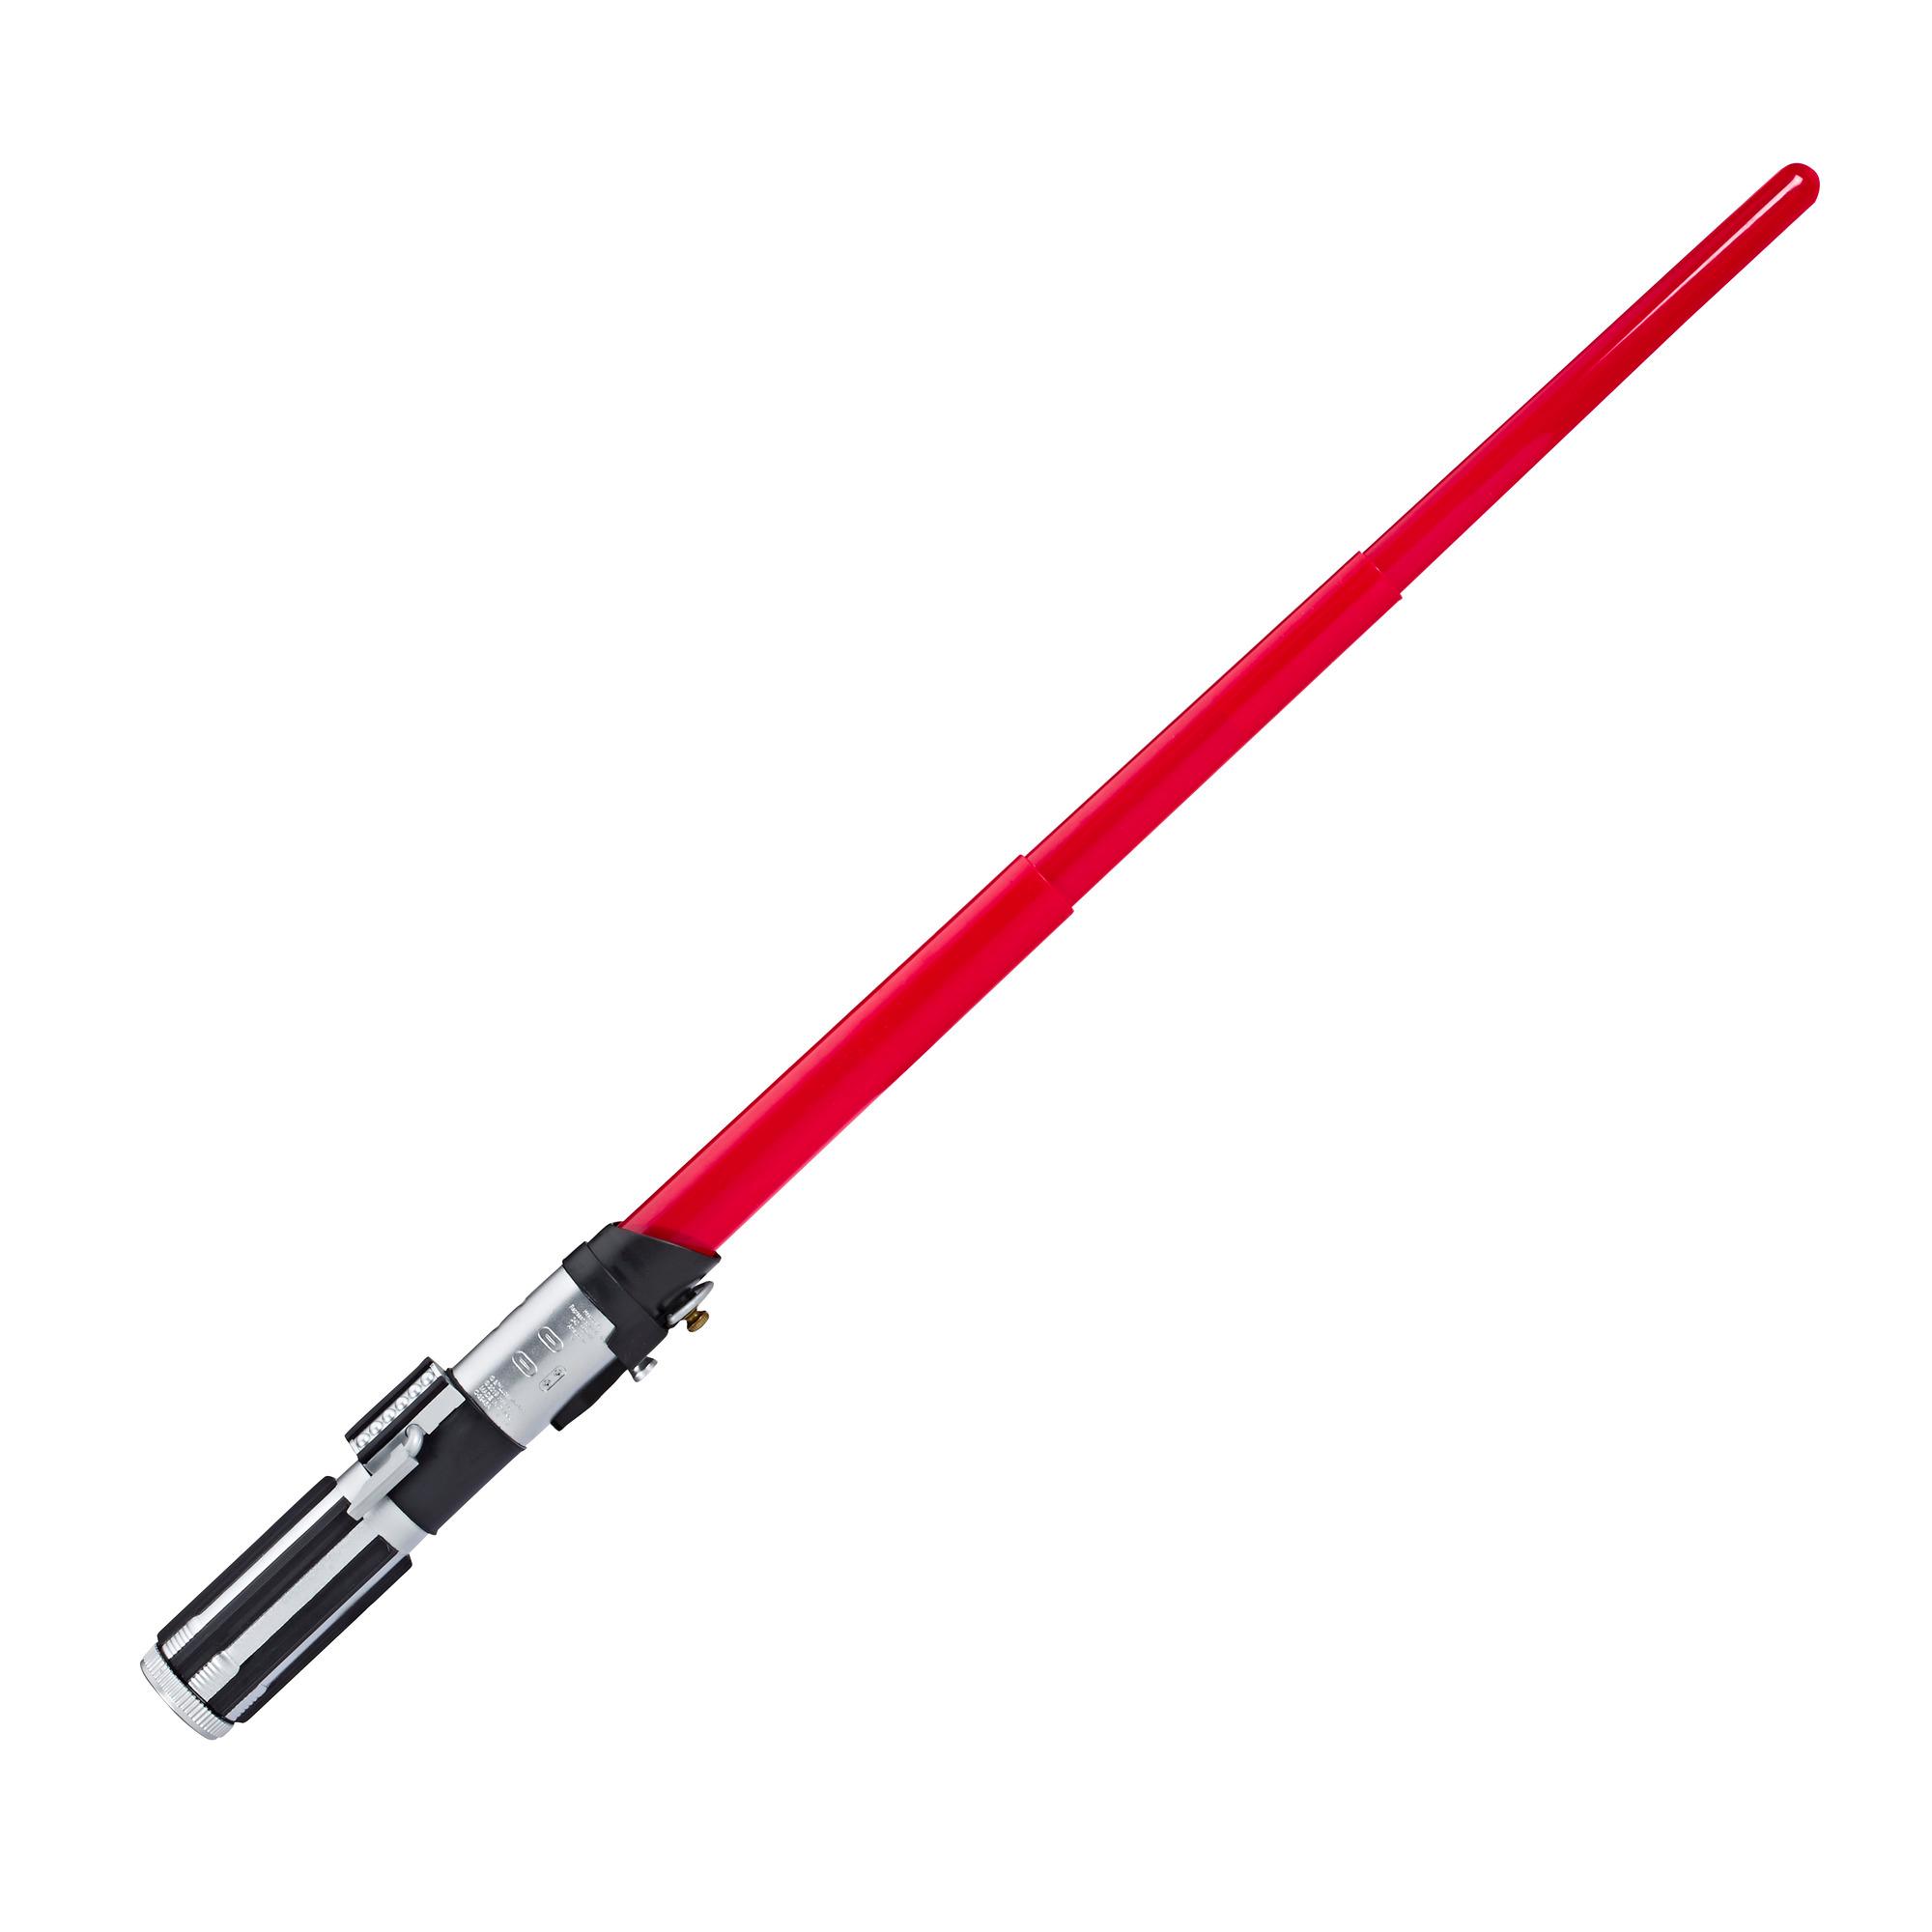 Star Wars Darth Vader Electronic Red Lightsaber